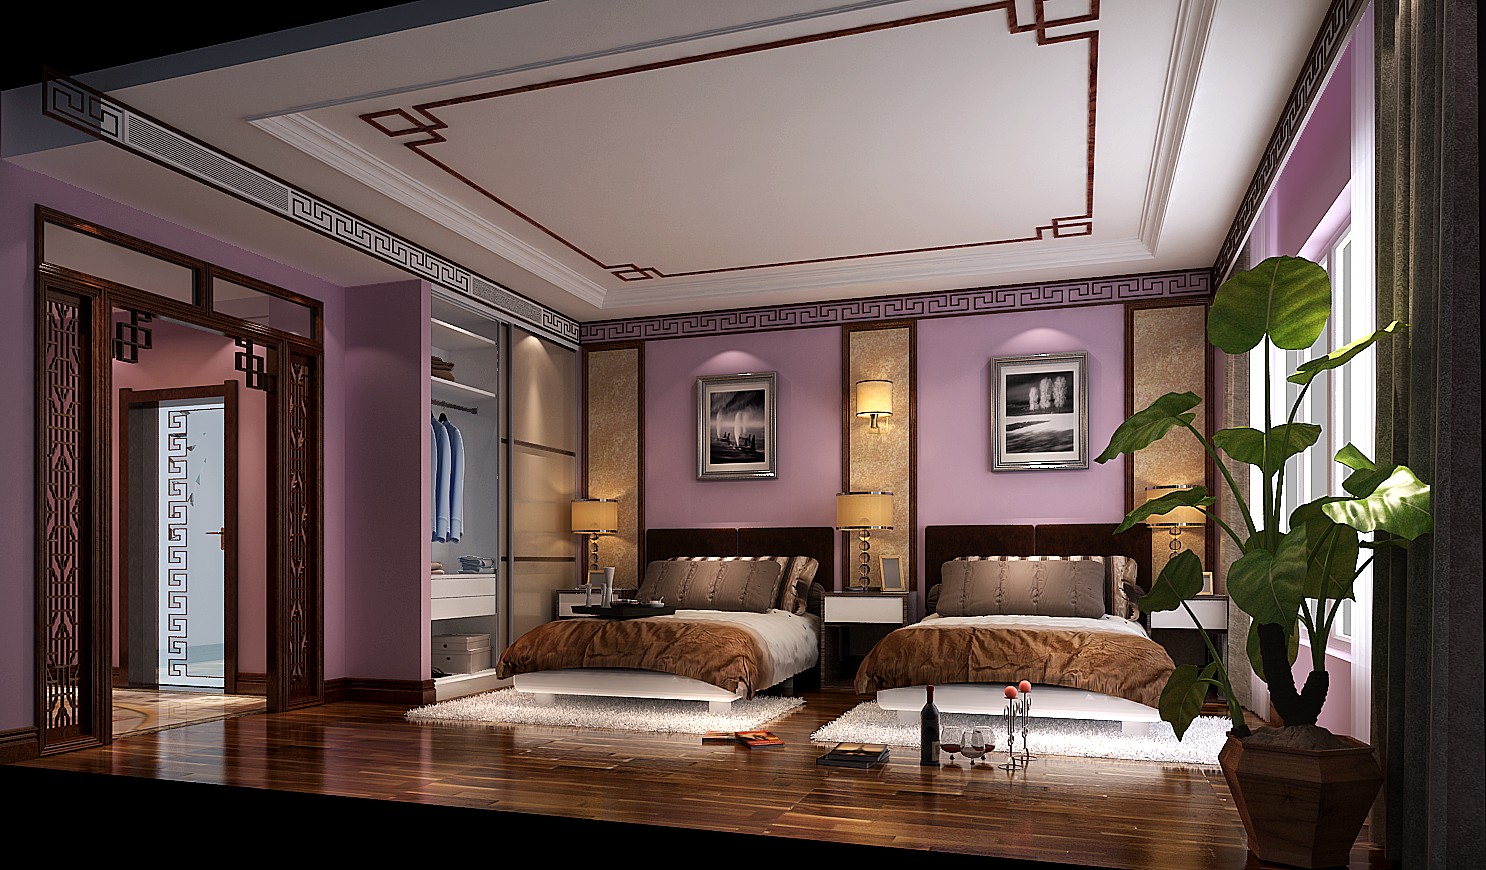 三居 新中式 效果图 设计案例 卧室图片来自高度国际设计装饰在西山一号院380㎡新中式案例的分享